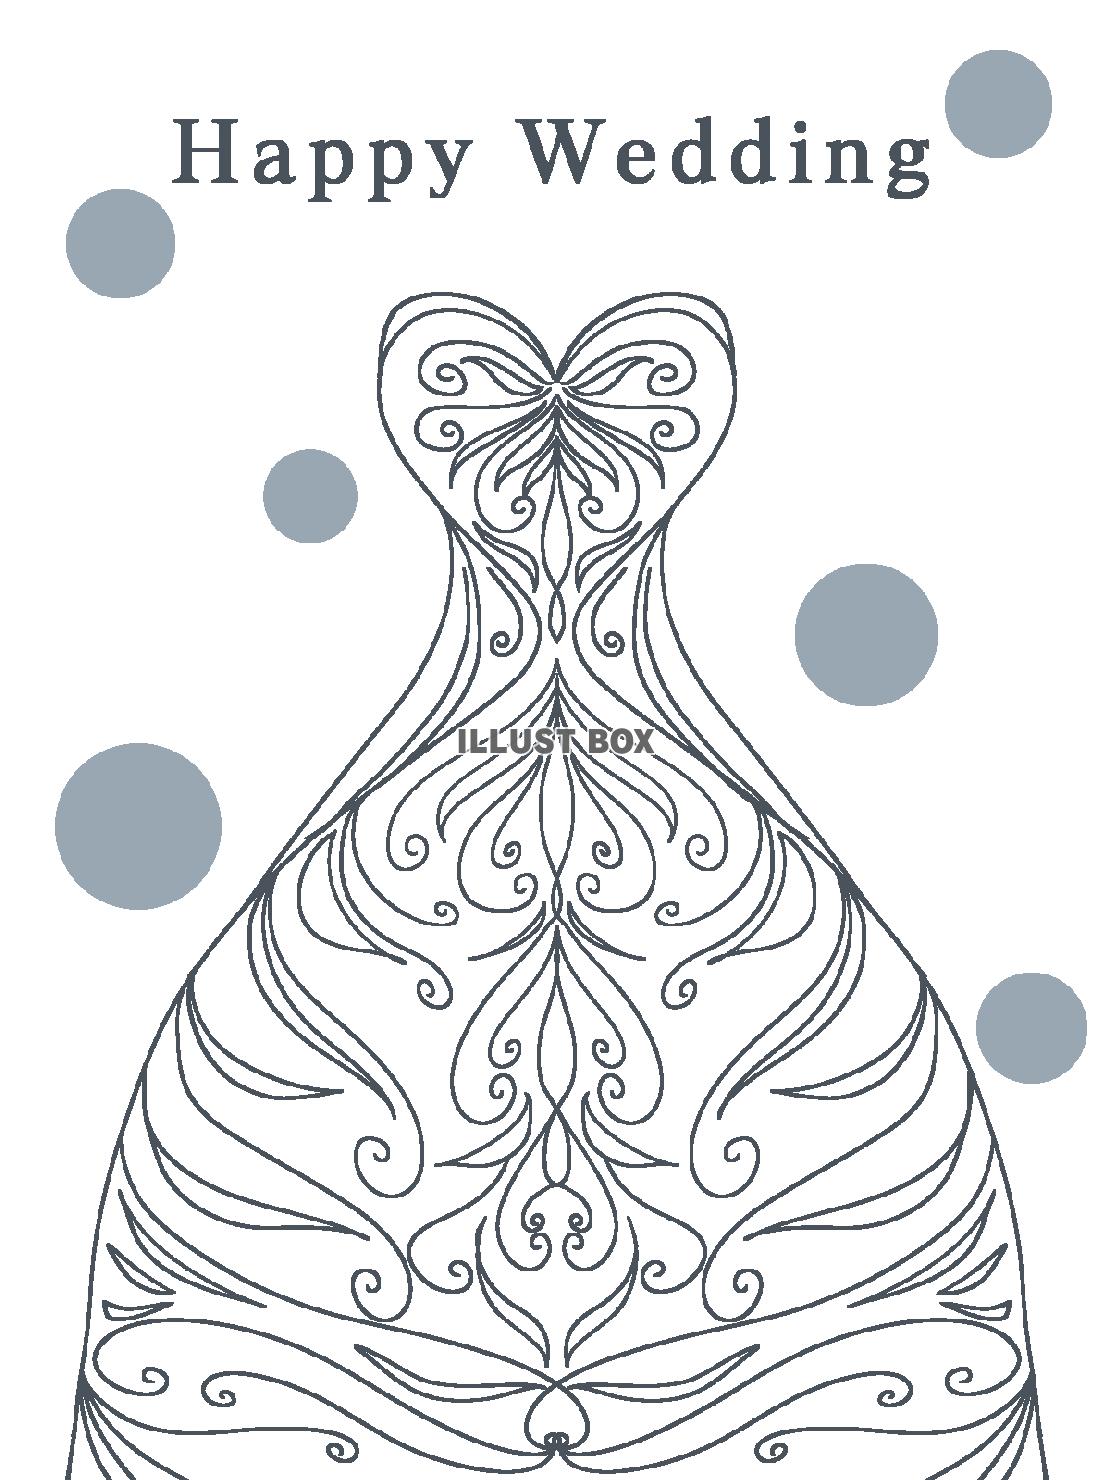 無料イラスト ウェディングカード シンプルなウェディングドレスのイラスト